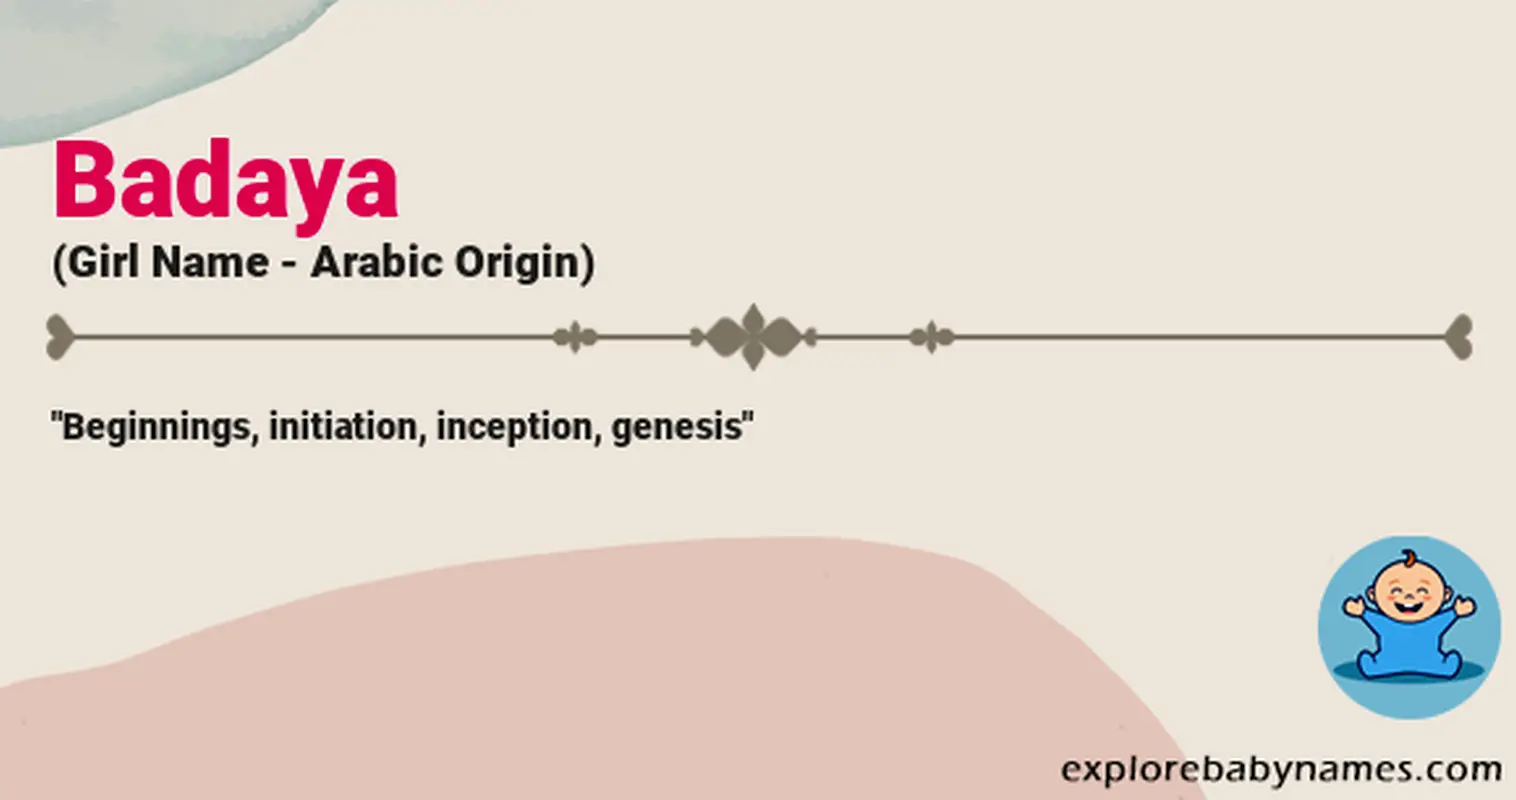 Meaning of Badaya